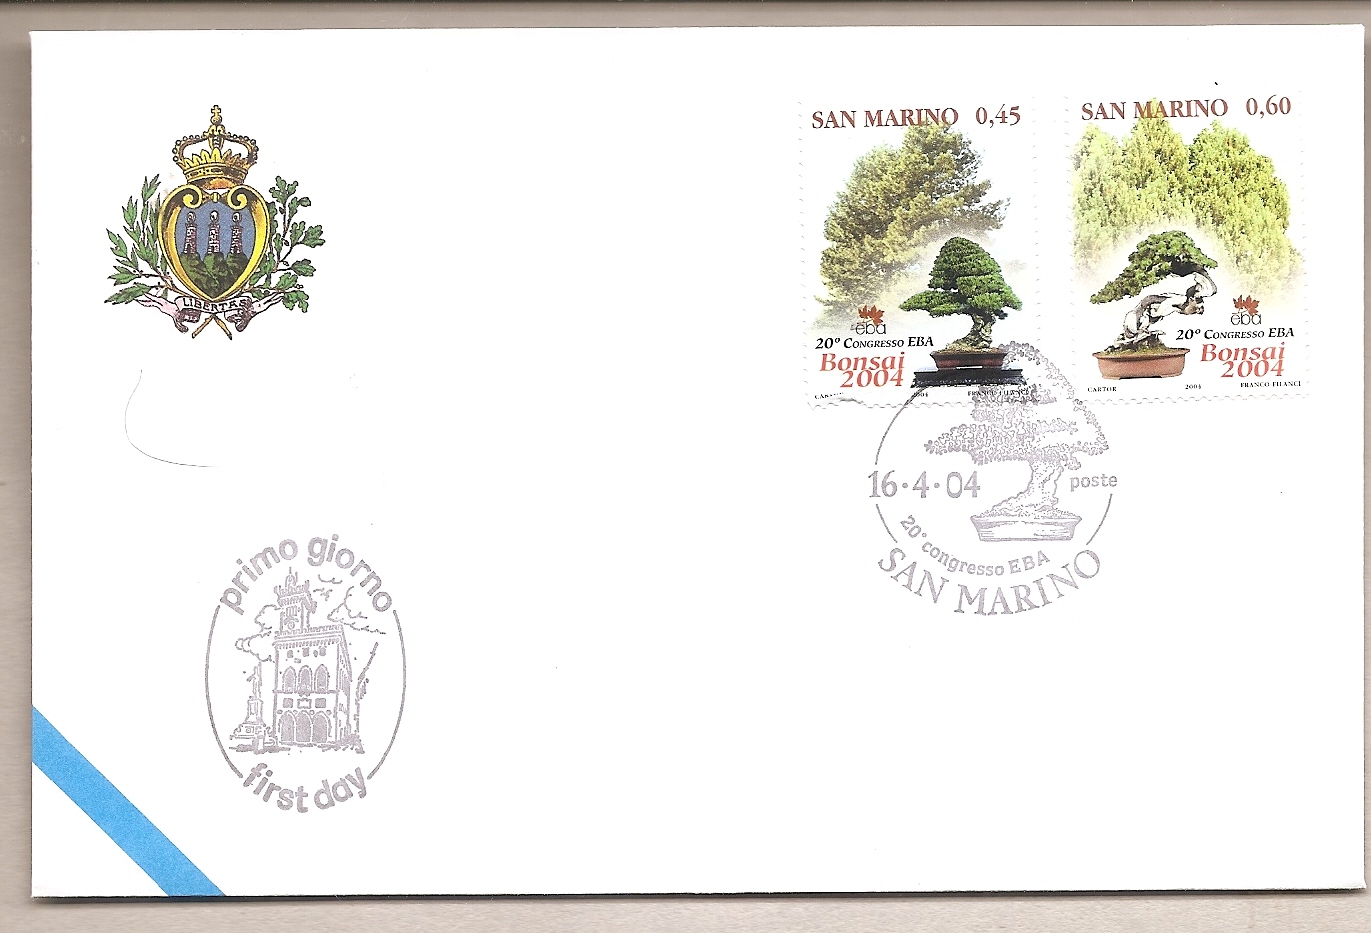 50924 - San Marino - busta FDC con serie completa ed annullo speciale:20 Congresso dell EBA - Bonsai  - 2004